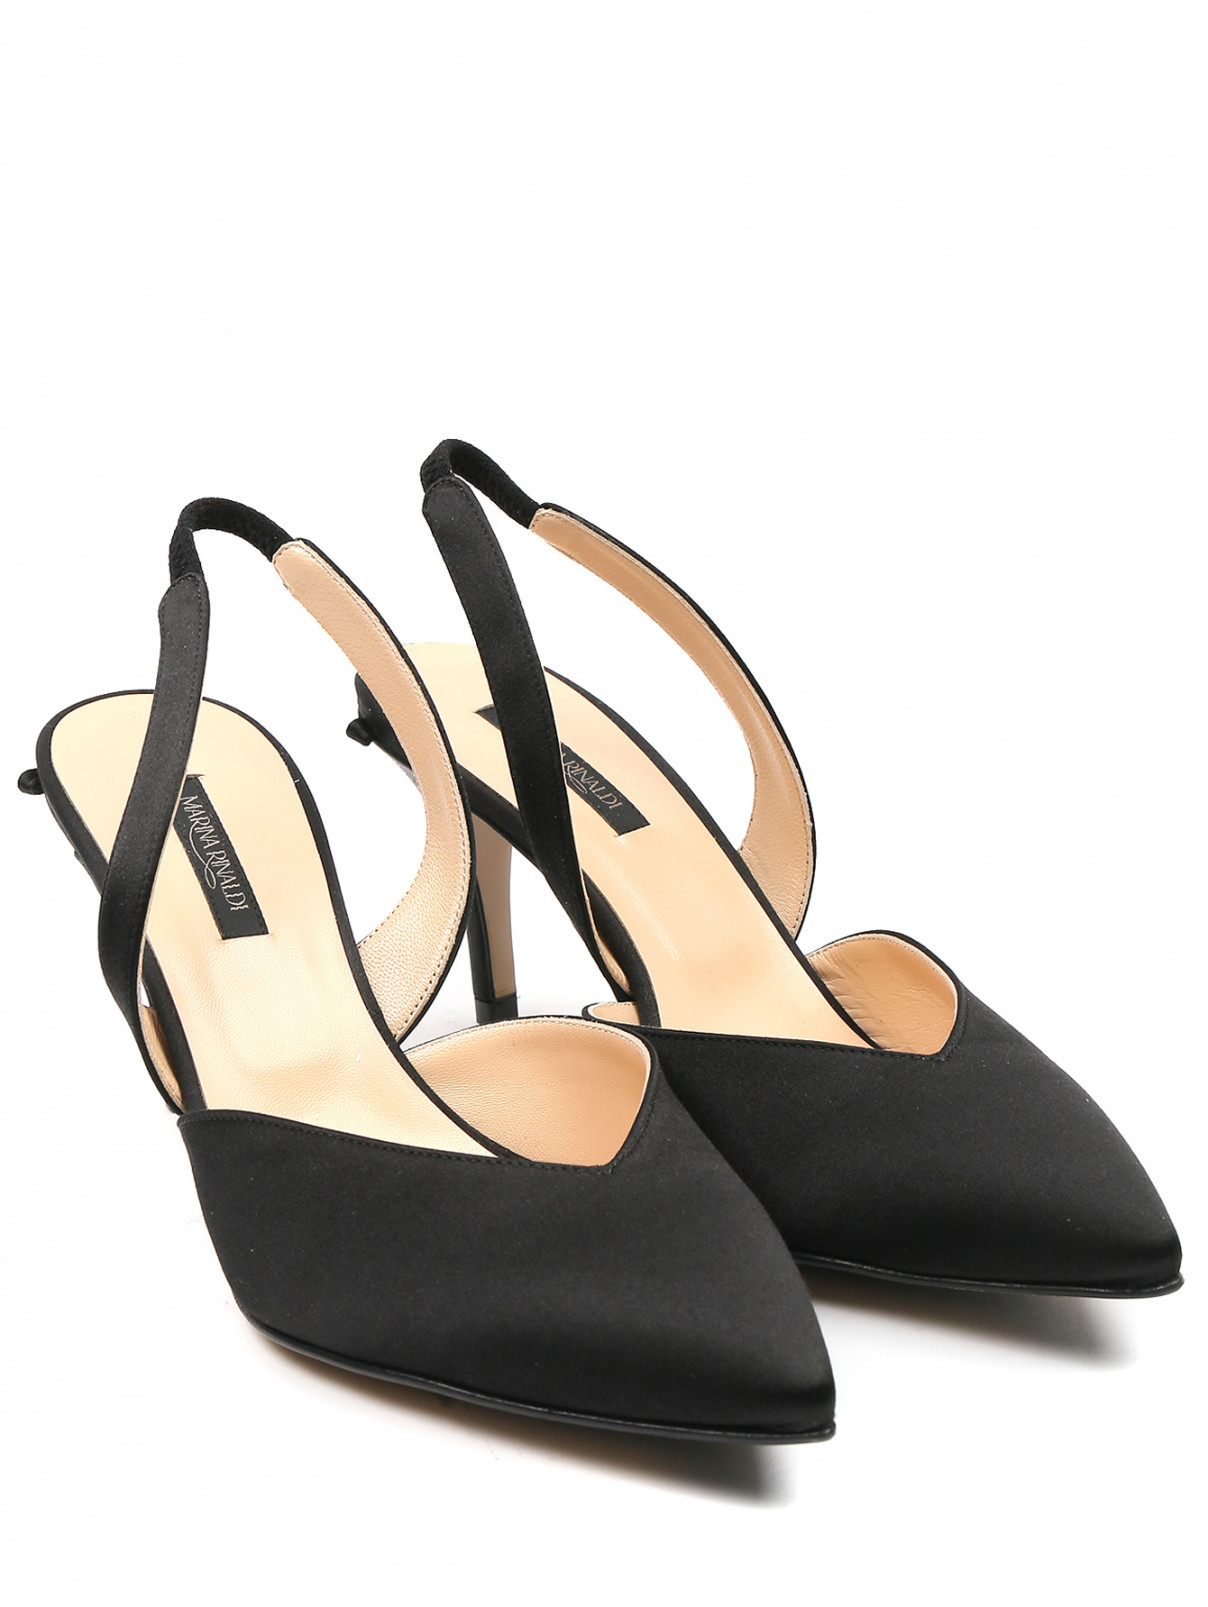 Атласные туфли из кожи и текстиля Marina Rinaldi  –  Общий вид  – Цвет:  Черный